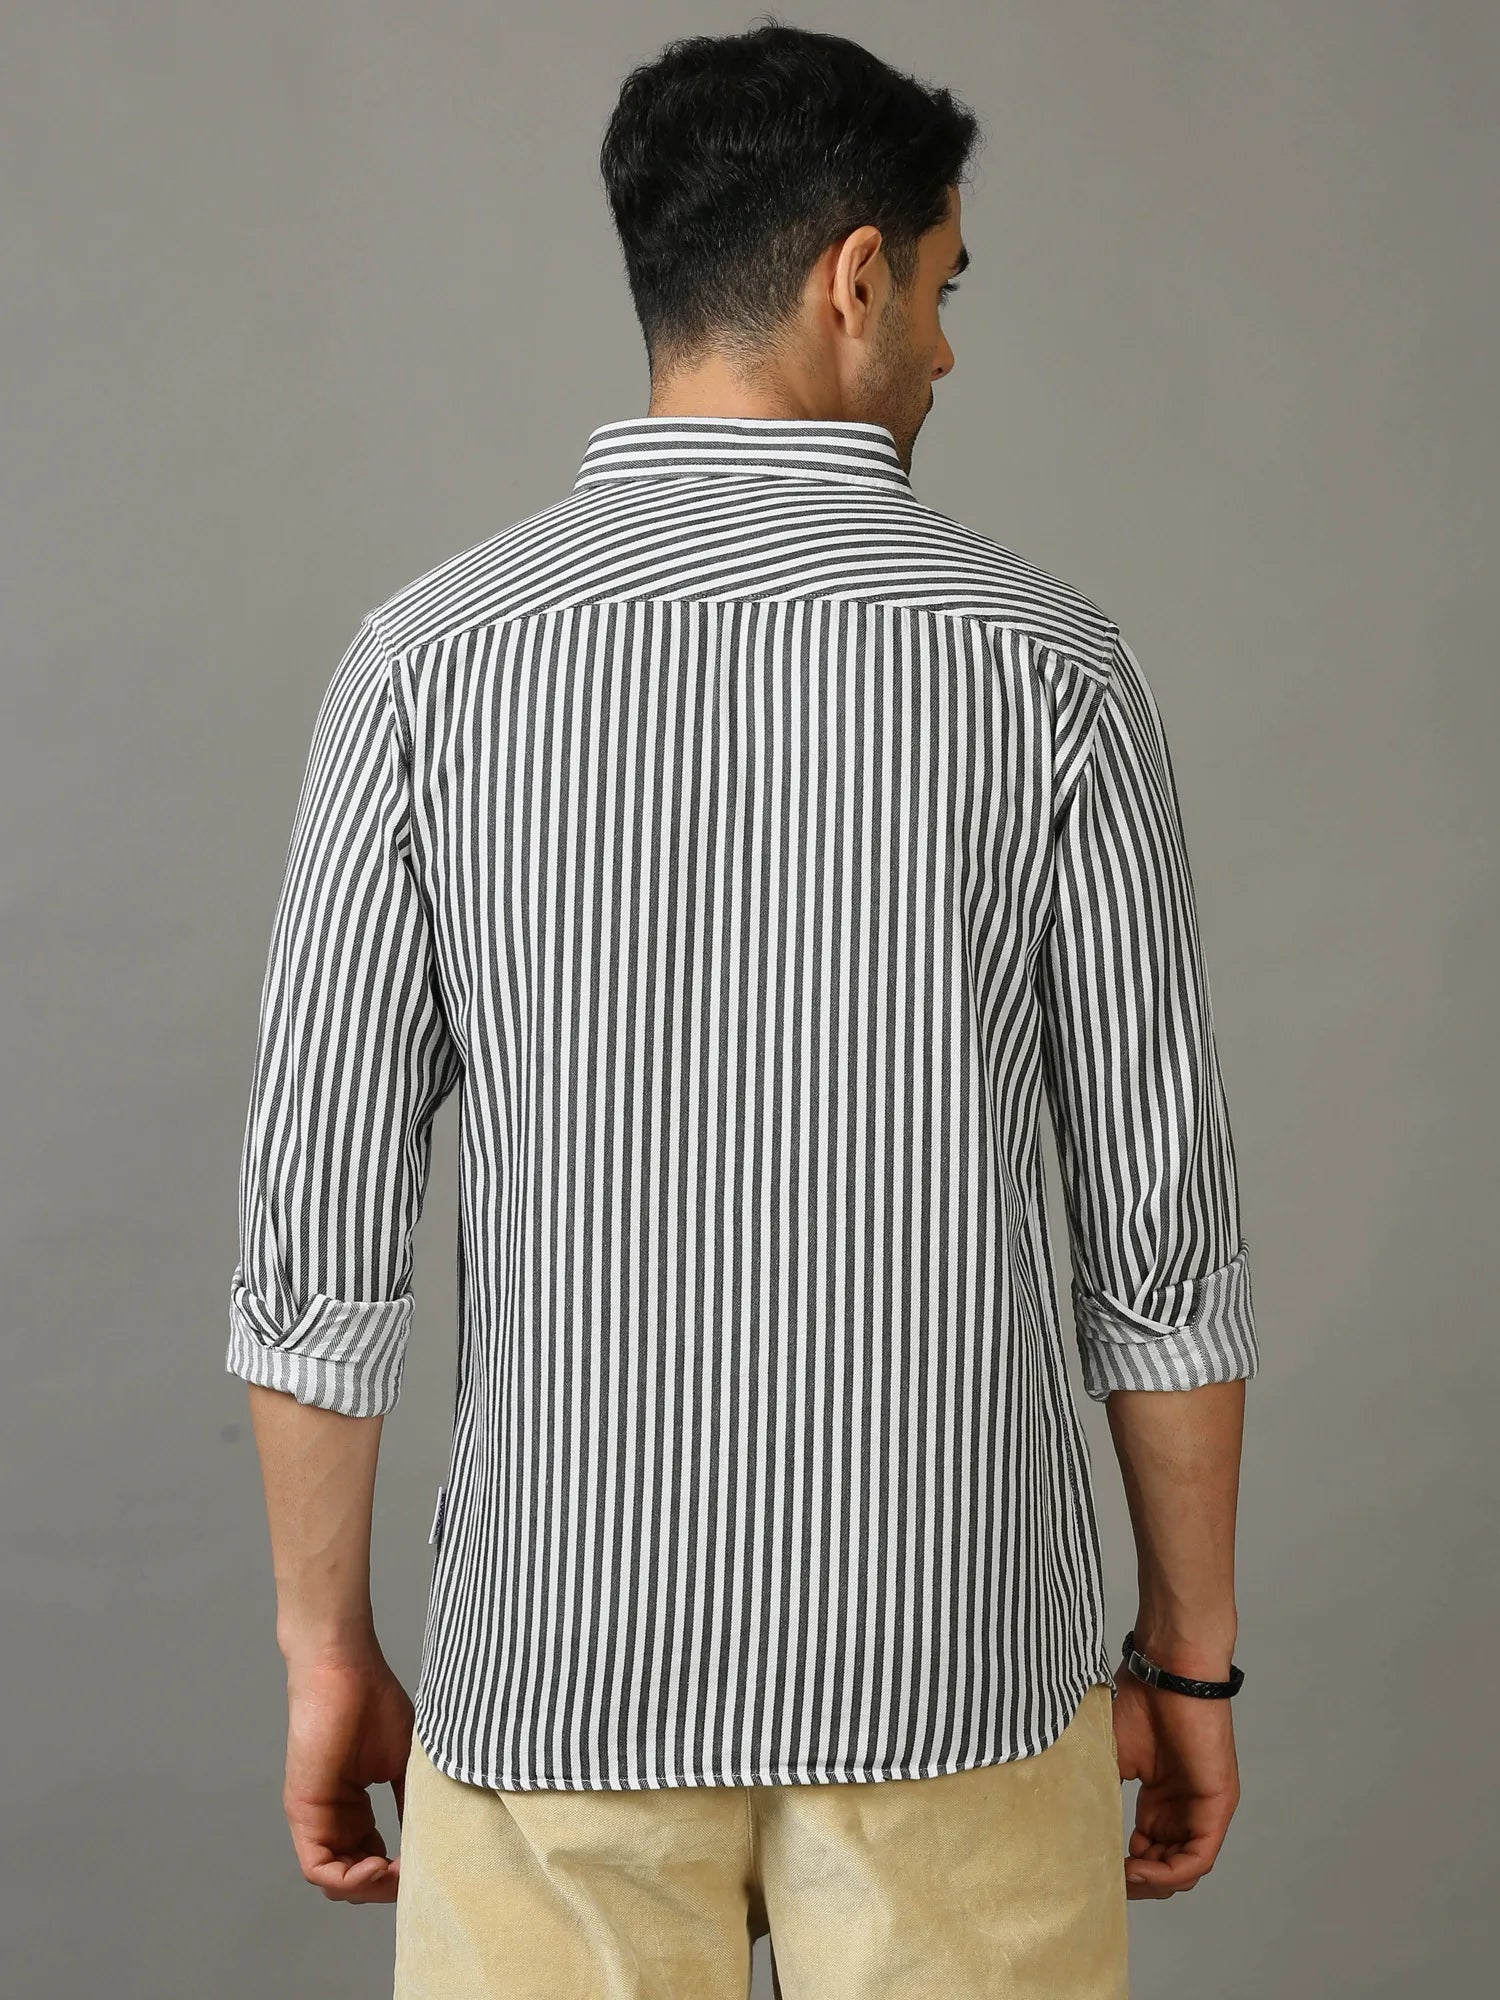 Dark Denim Stripes Shirt for Men